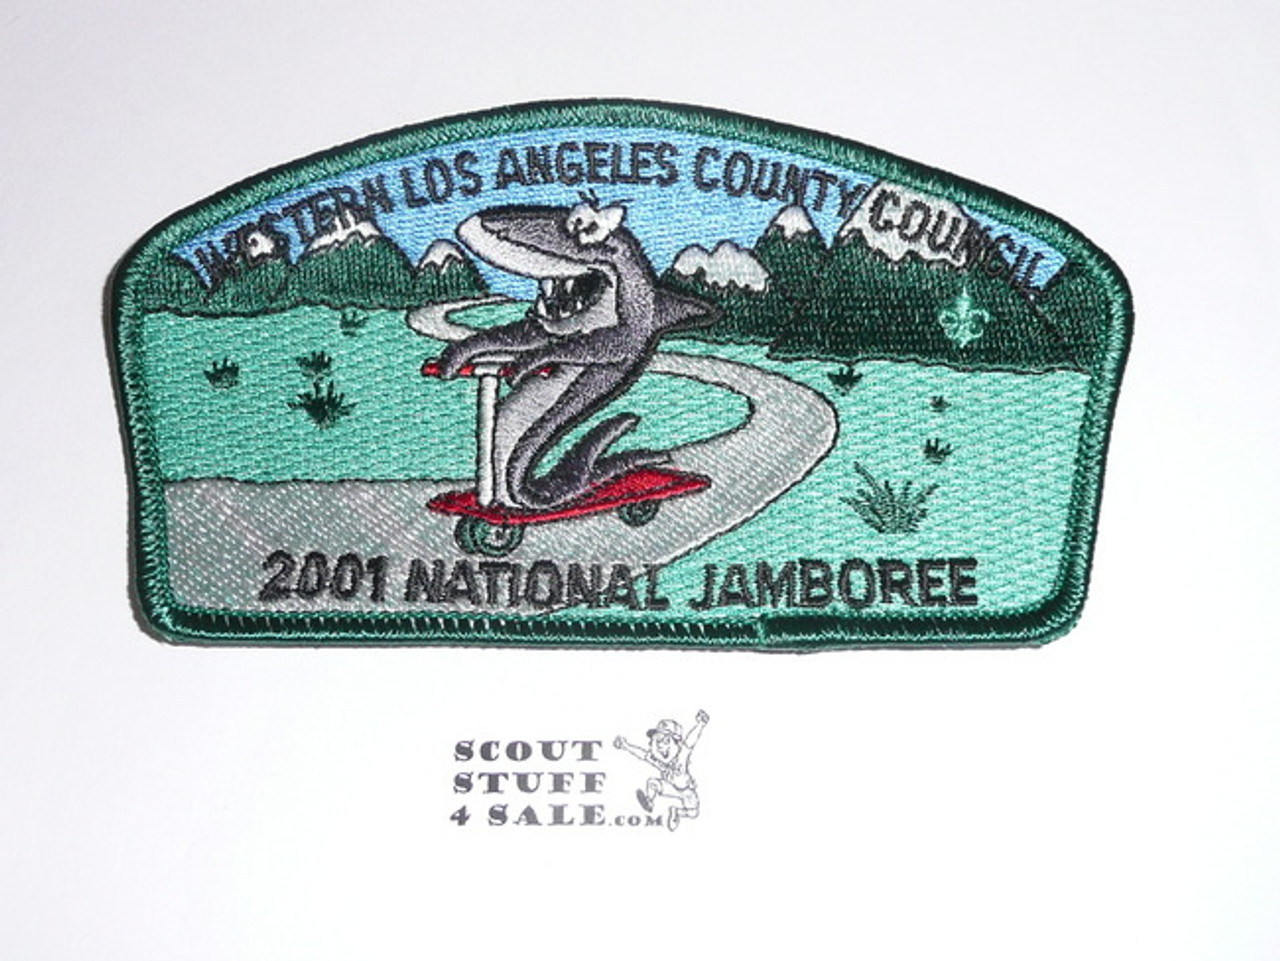 2001 National Jamboree JSP - Western Los Angeles County Council JSP, Green bdr